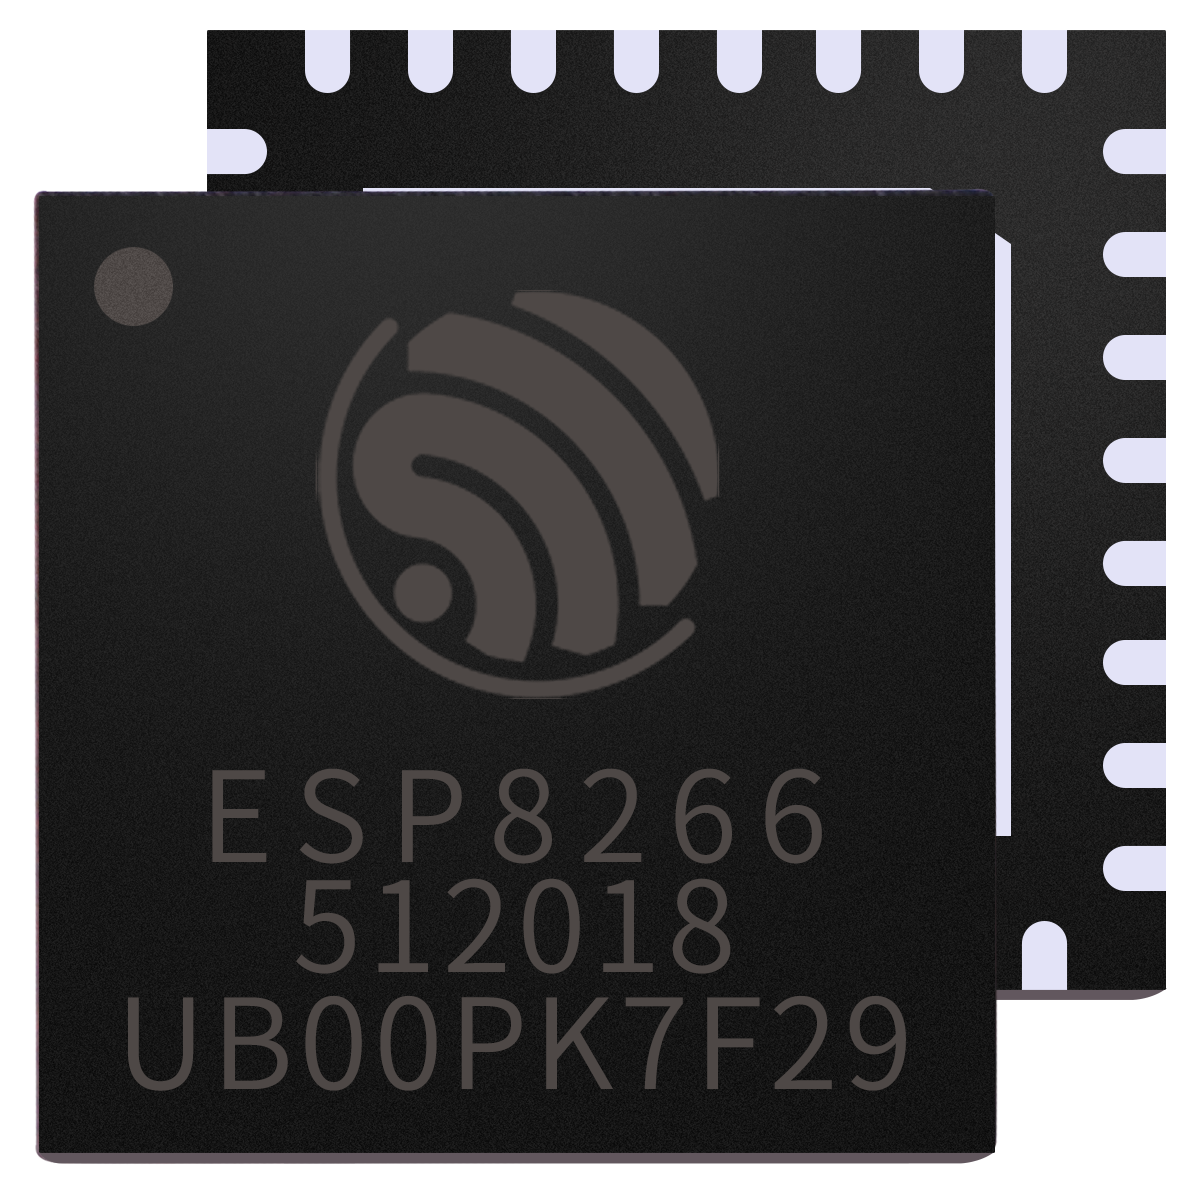 WiFi芯片ESP8266图片